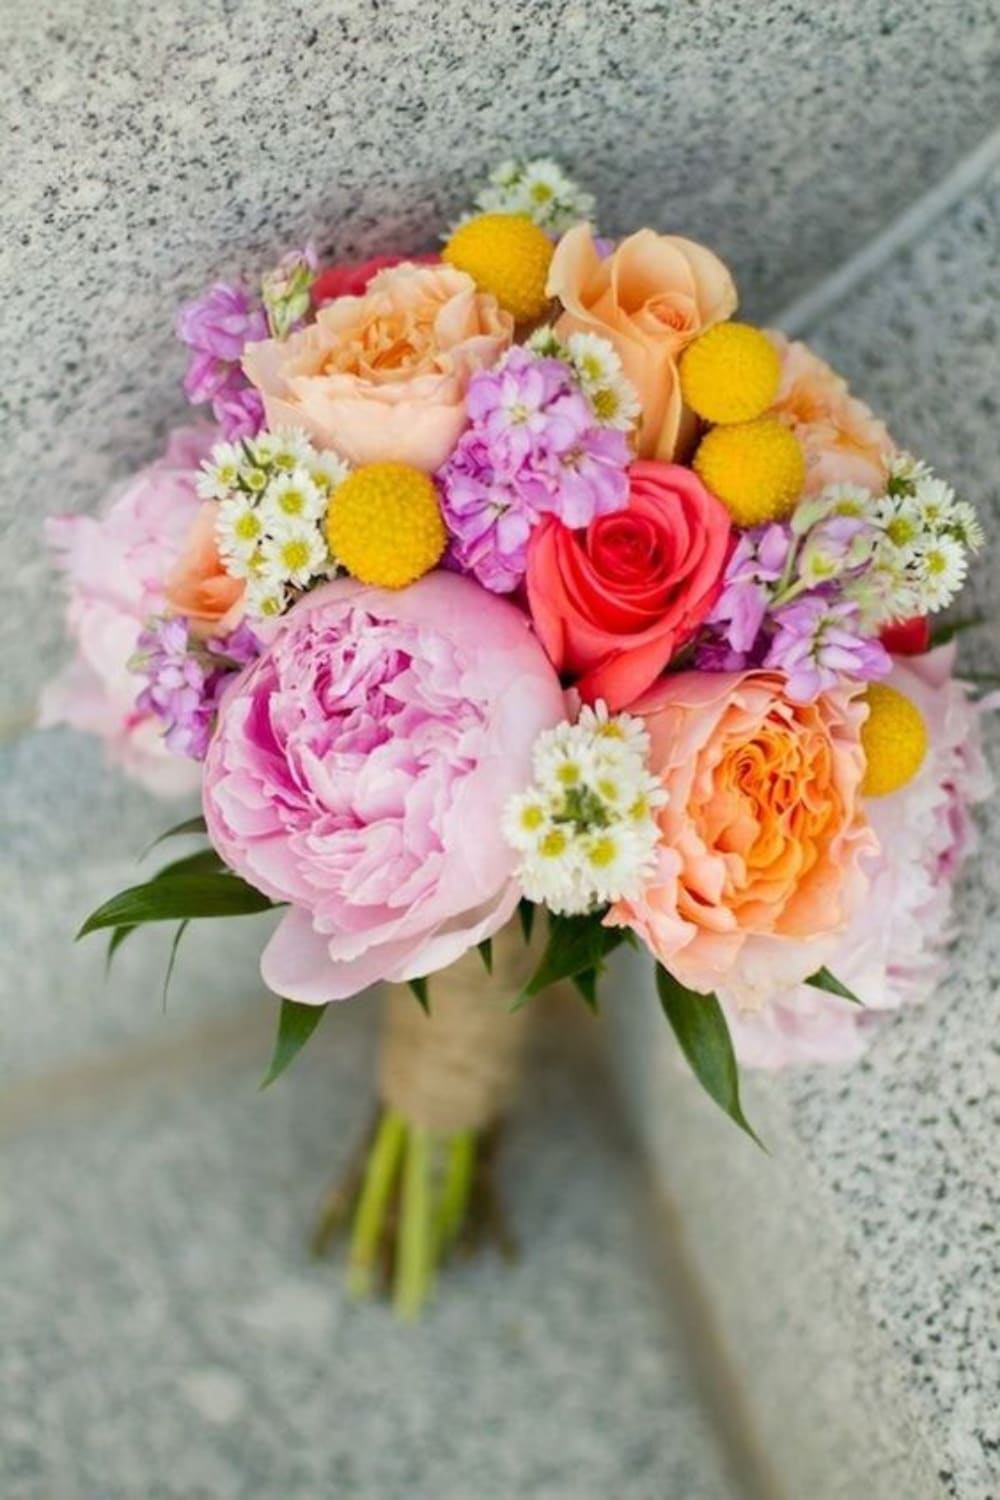 bruidsboeket-pioenrozen-lente-kleuren